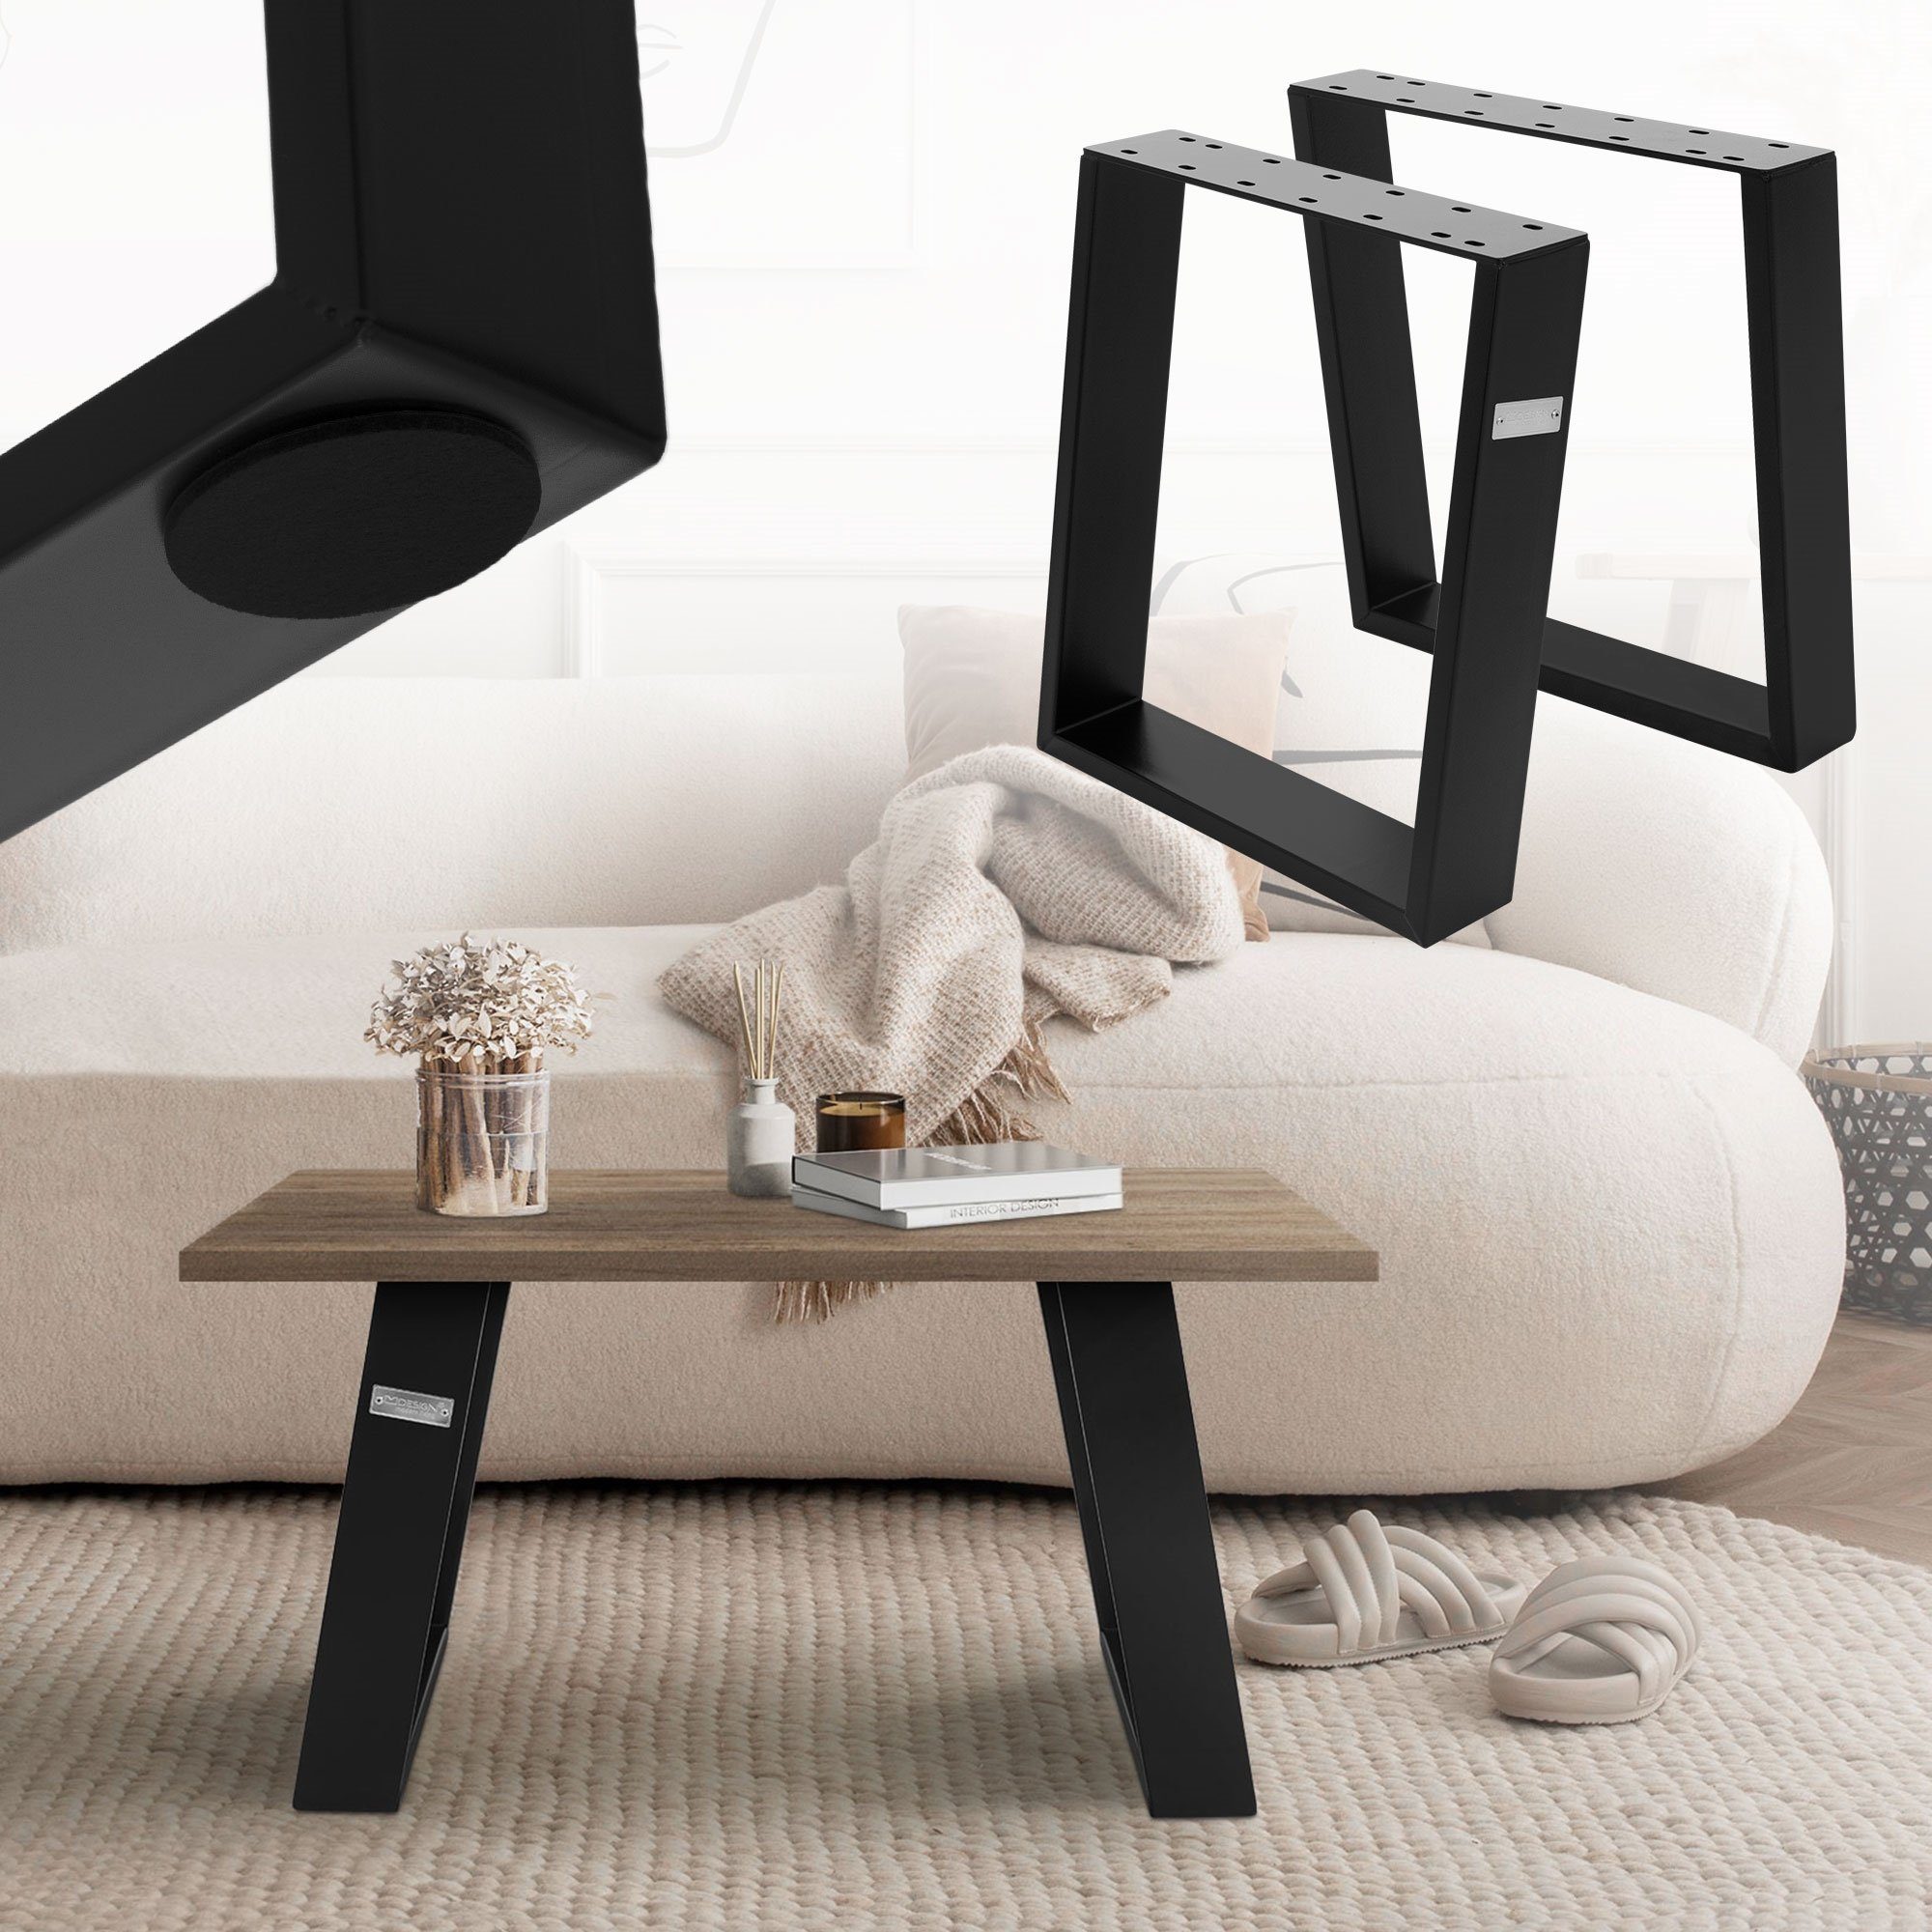 ML-DESIGN Tischbein Möbelkufen Tischgestell Tischuntergestell Möbelfüße für Couchtisch, 2er Set 80GRAD Neigung 40x43cm Schwarz aus Stahl geneigt